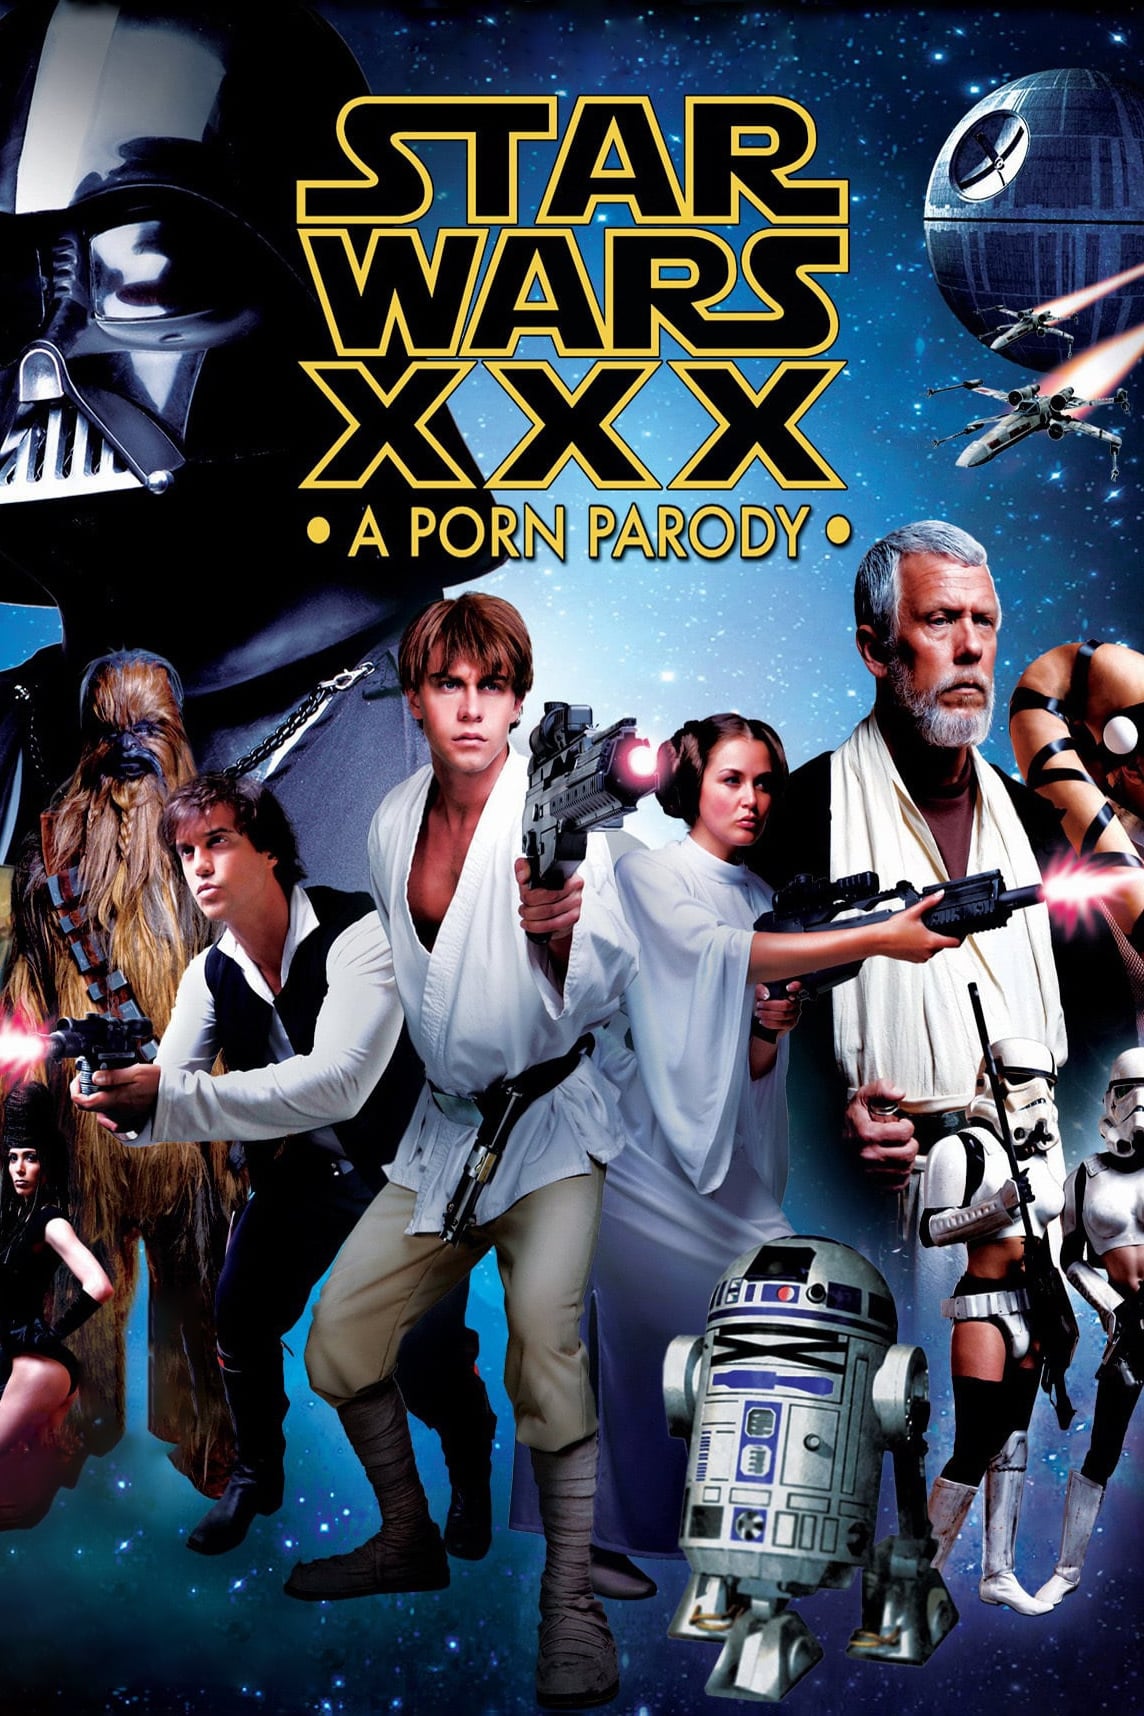 Star wars xxx porn parody 2012